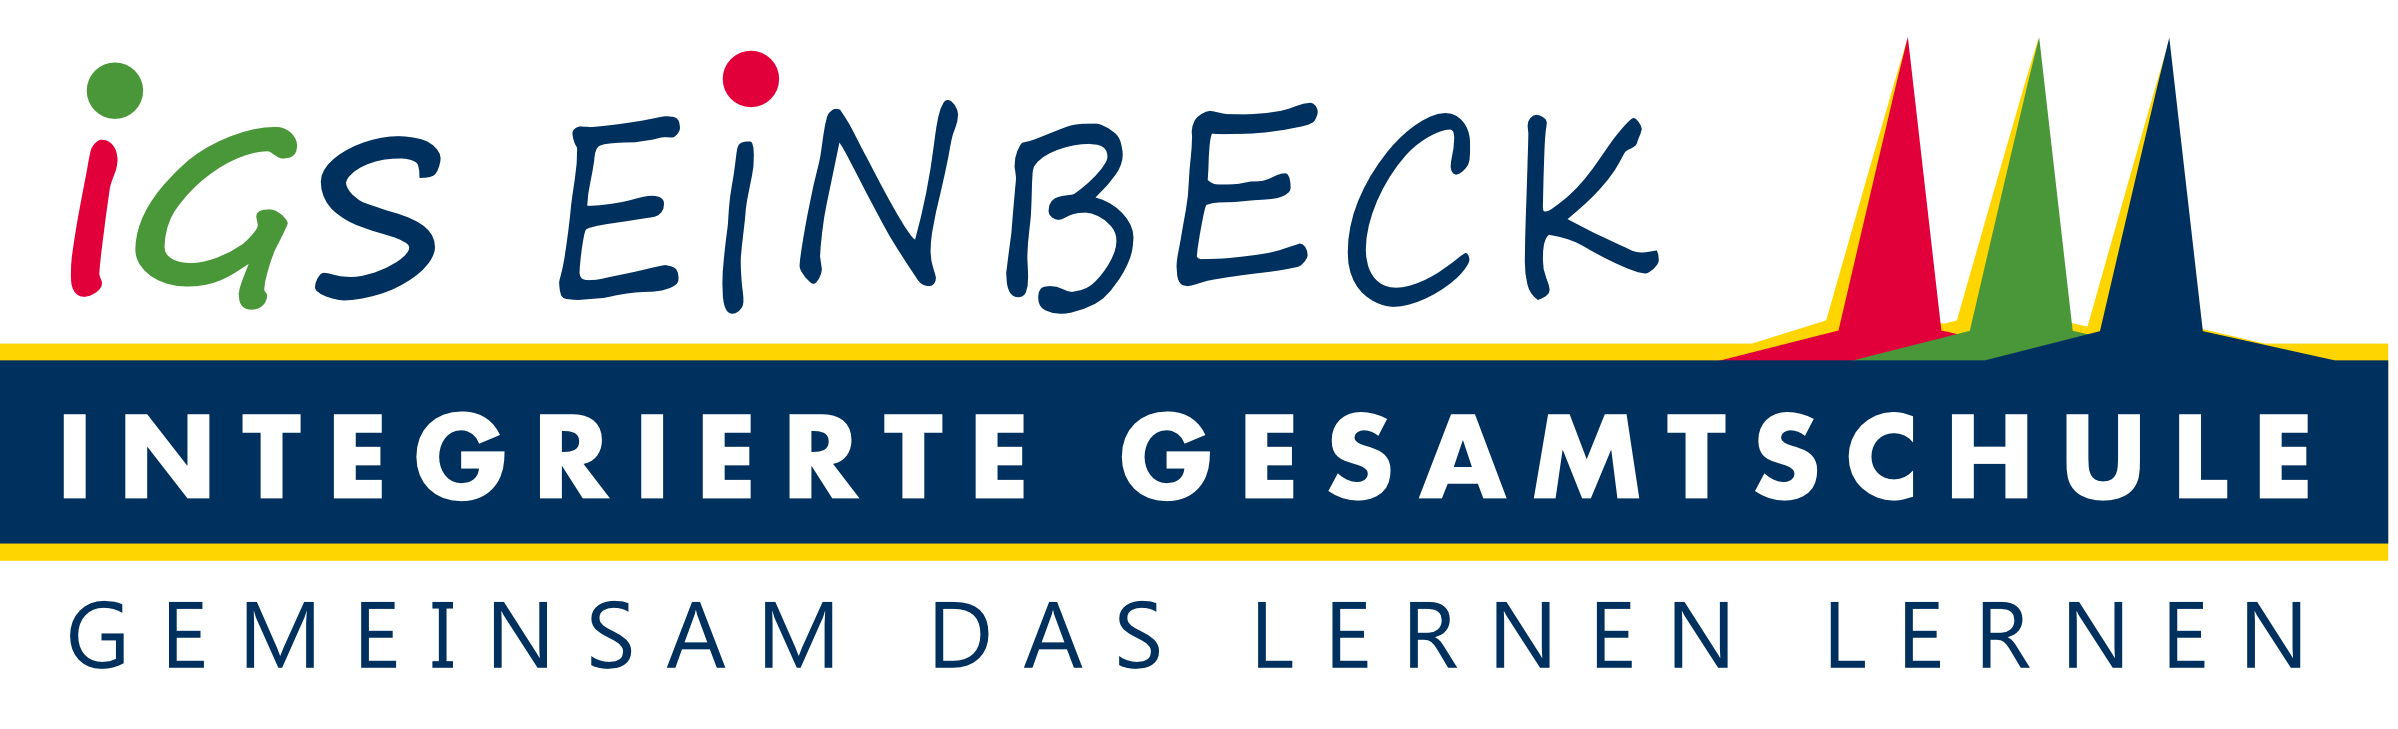 Integrierte Gesamtschule Einbeck